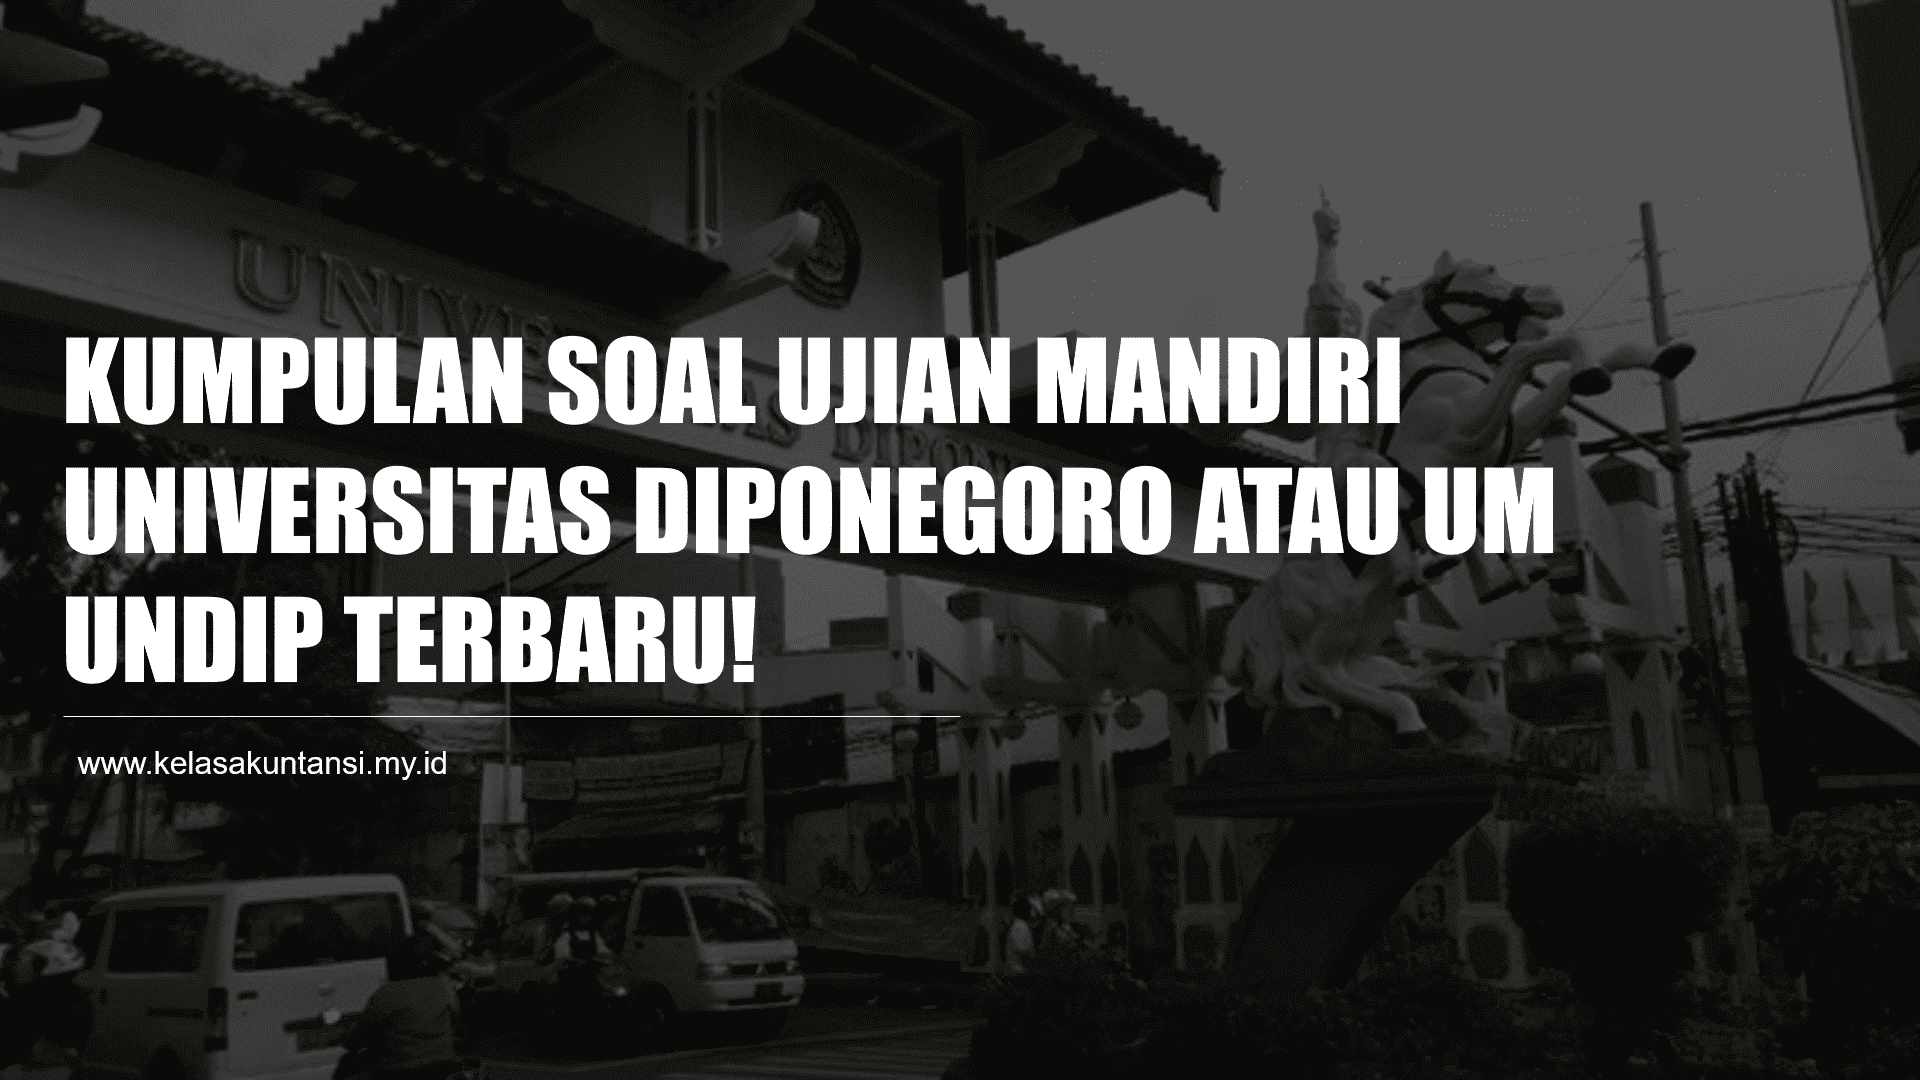 Download Kumpulan Soal Ujian Mandiri Universitas Diponegoro atau UM UNDIP Terbaru!